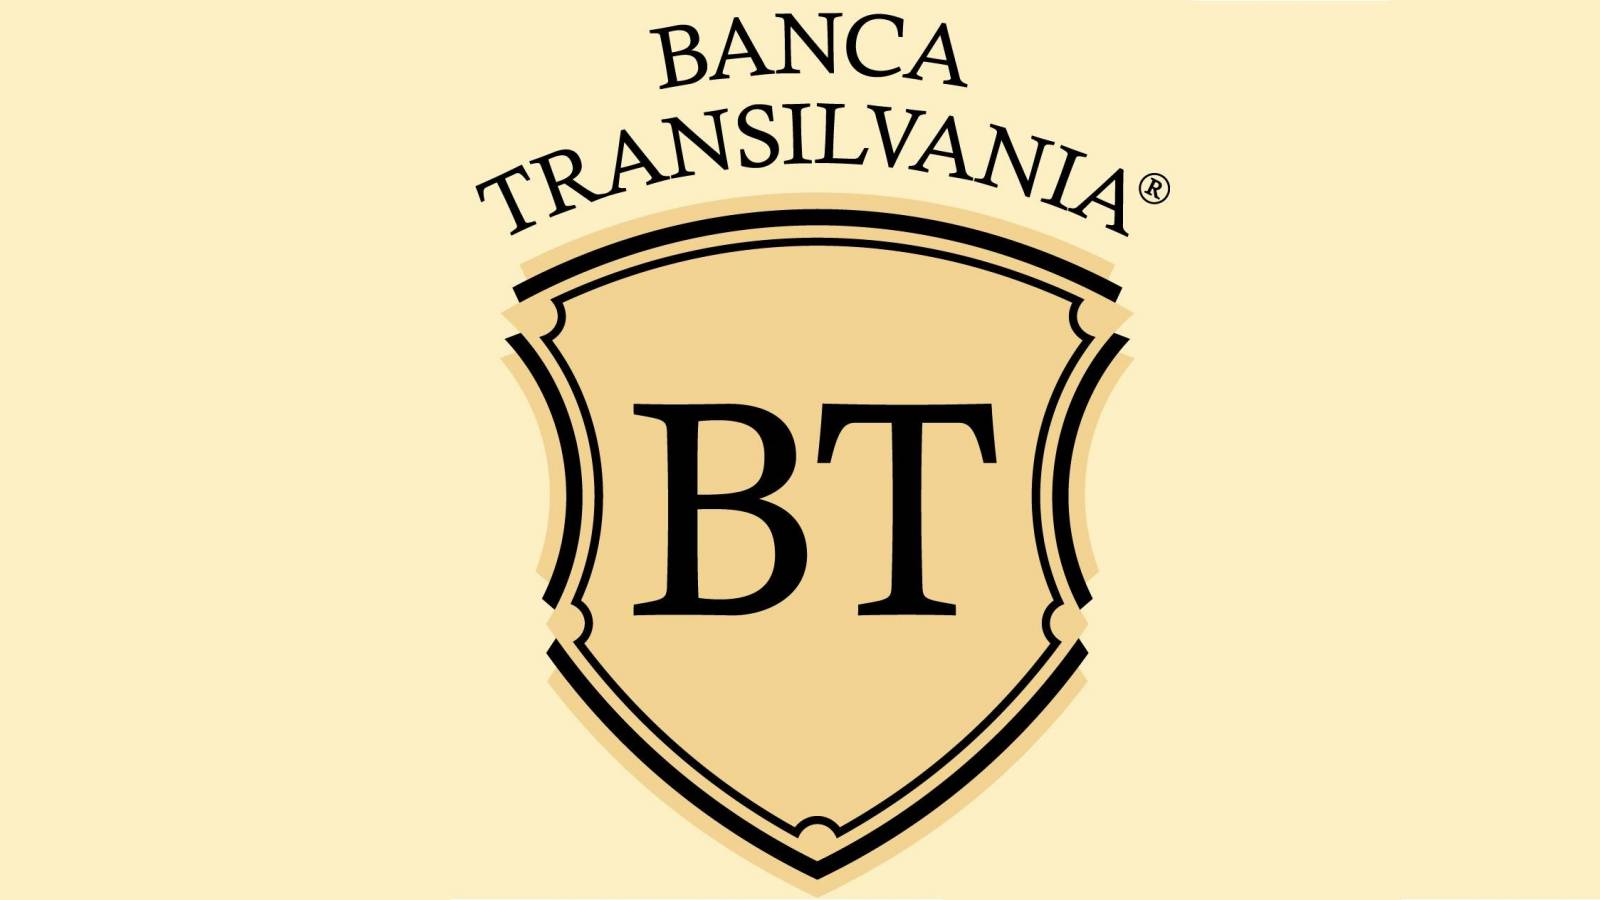 BANCA Transilvania geeft een uiterst belangrijke waarschuwing aan alle Roemeense klanten